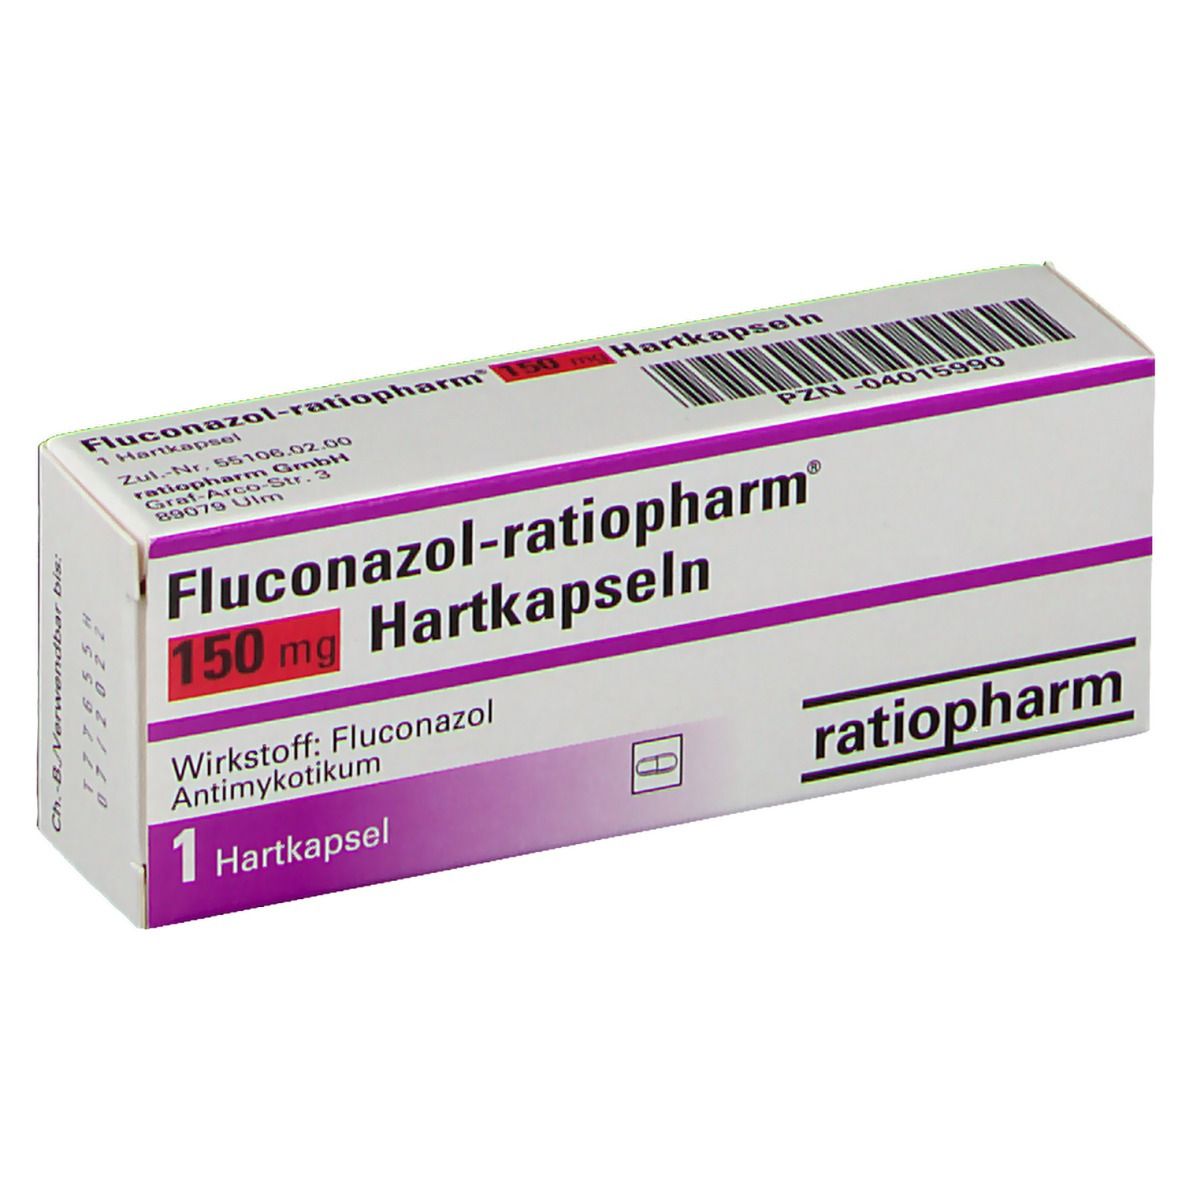 Fluconazol-ratiopharm® 150 mg